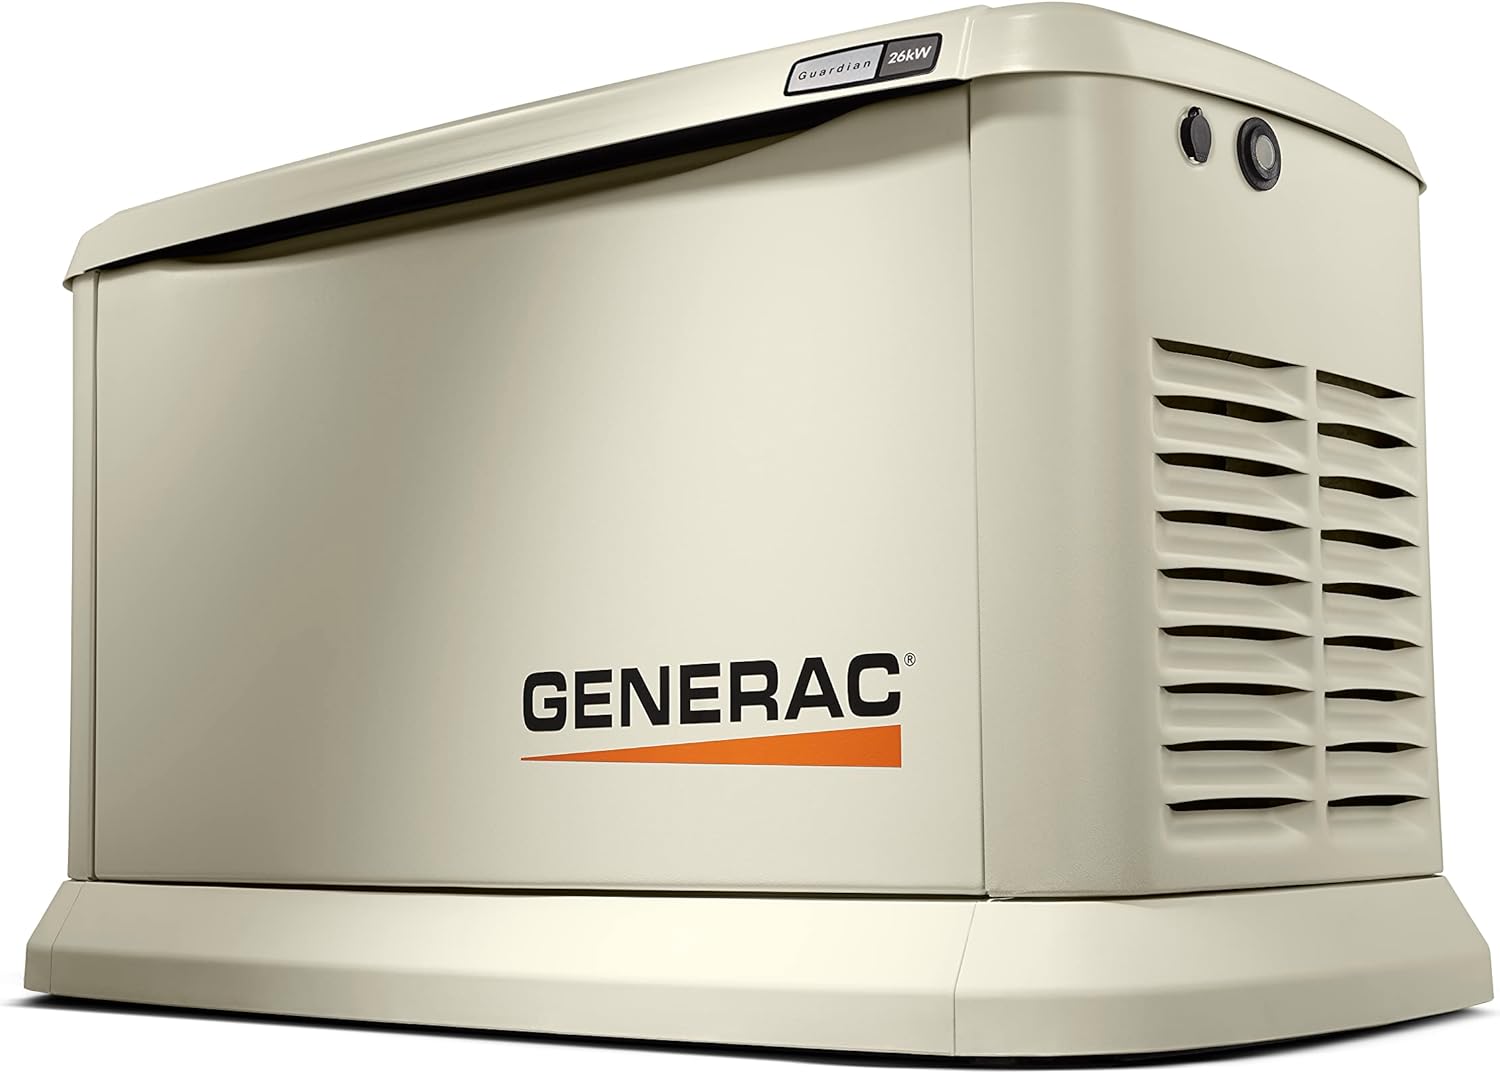 Generac 7290 26kW Air Cooled Generator Review